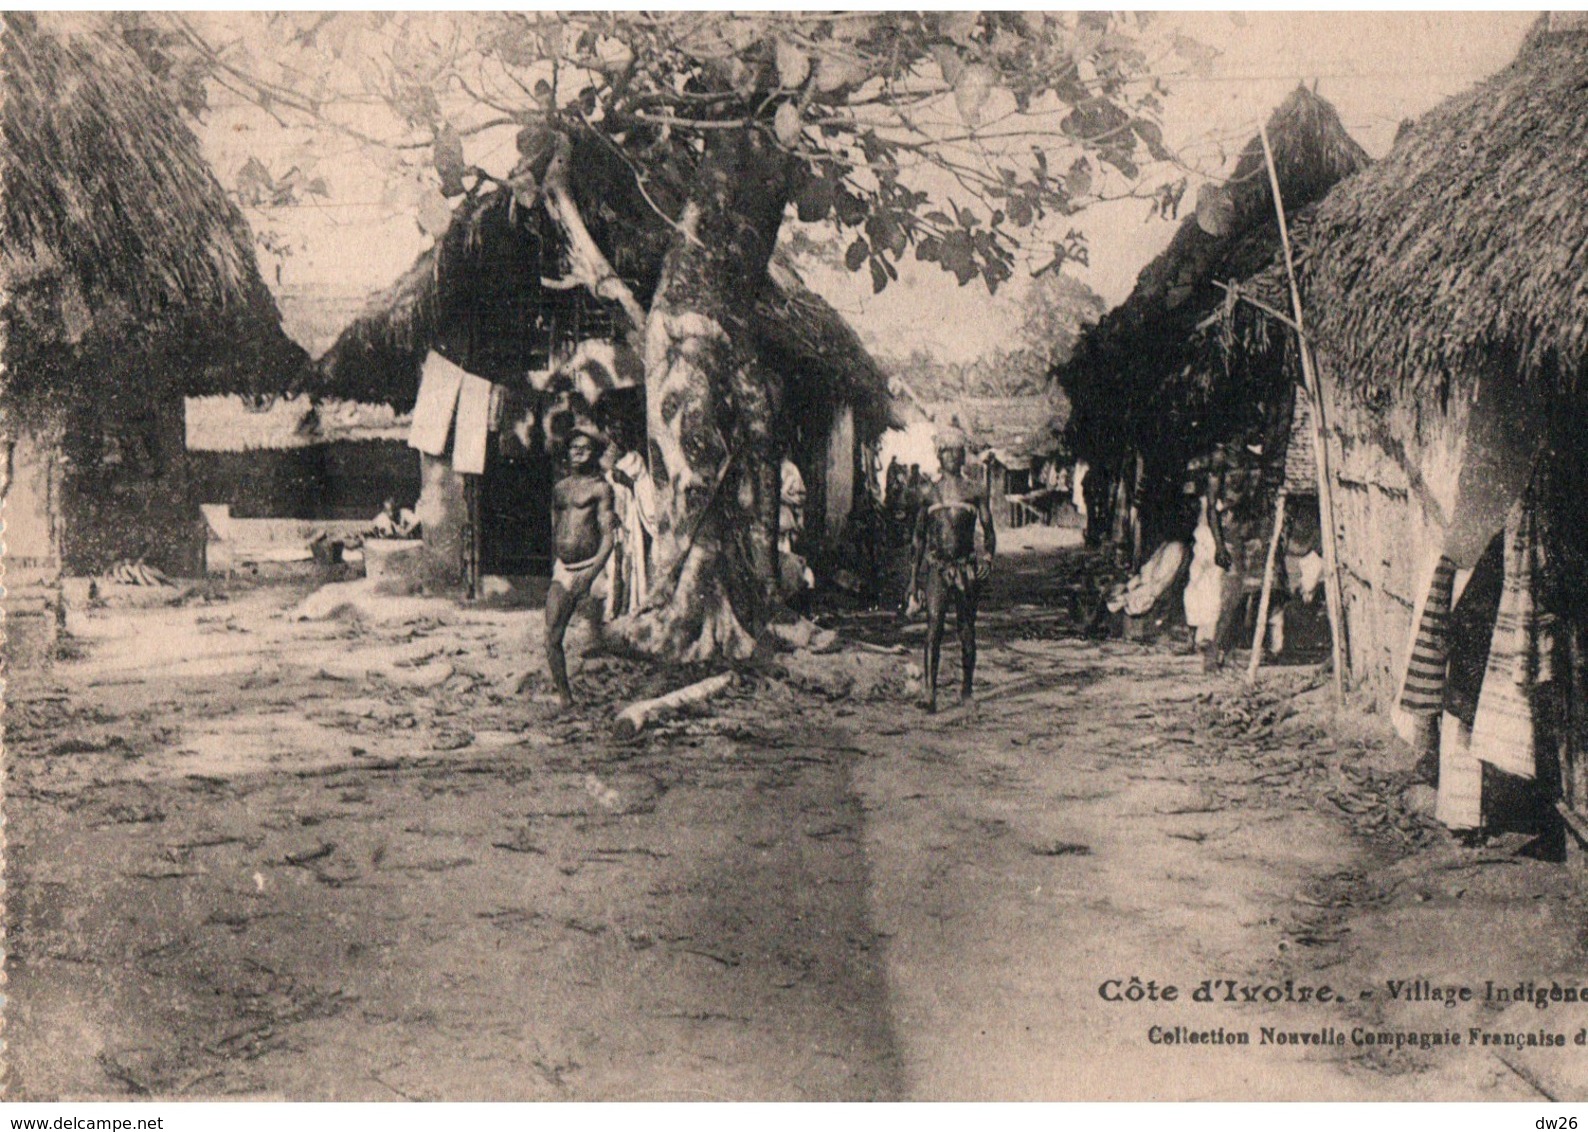 Côte D'Ivoire - Village Indigène - Collection Nouvelle Compagnie Française De Koug - Costa D'Avorio